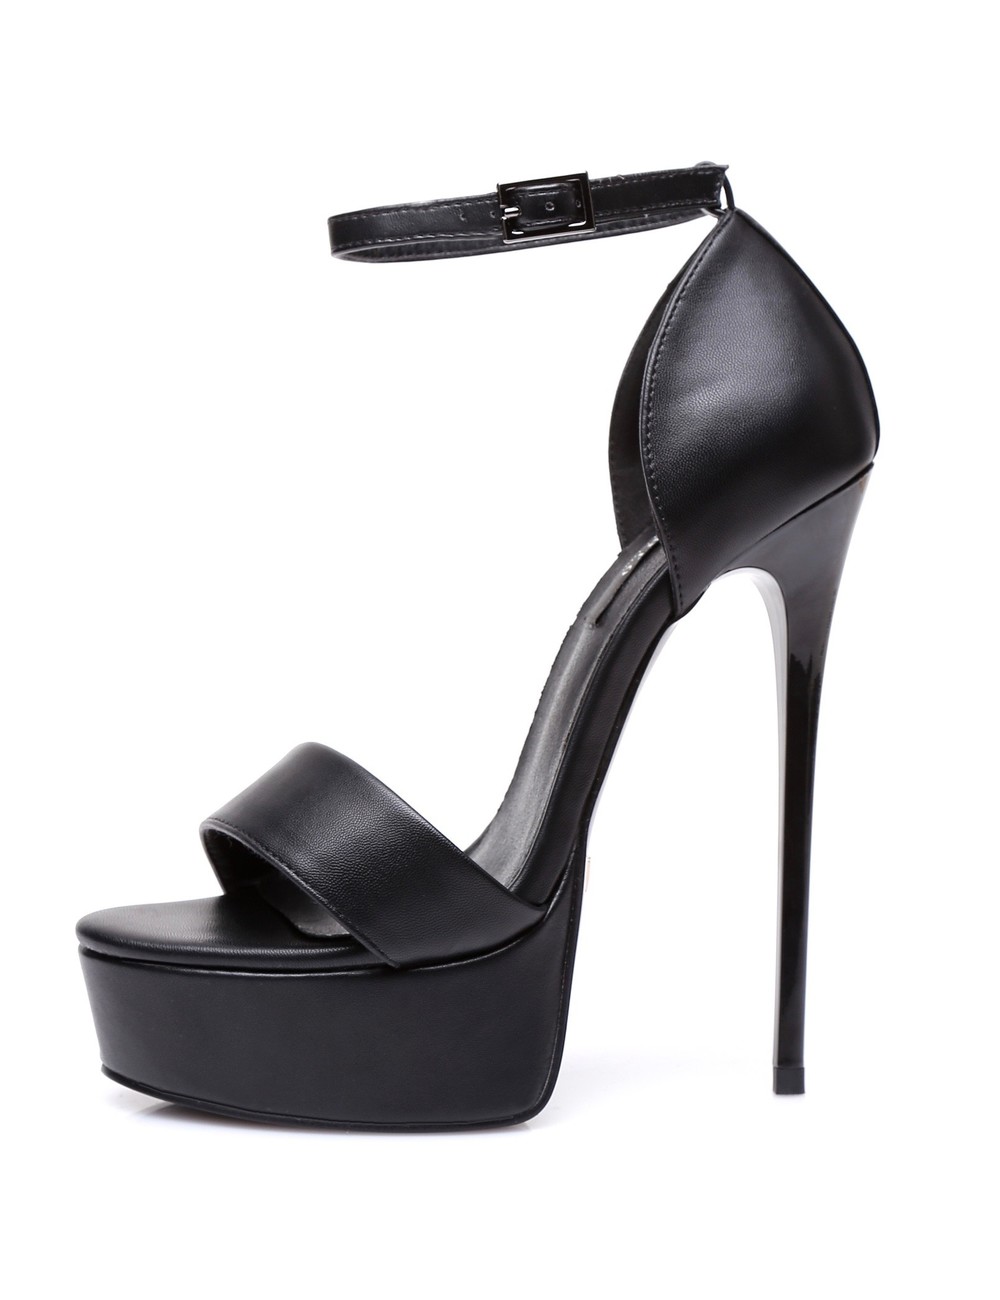 Clementine - Black Platform Heels – Prologue Shoes-nlmtdanang.com.vn